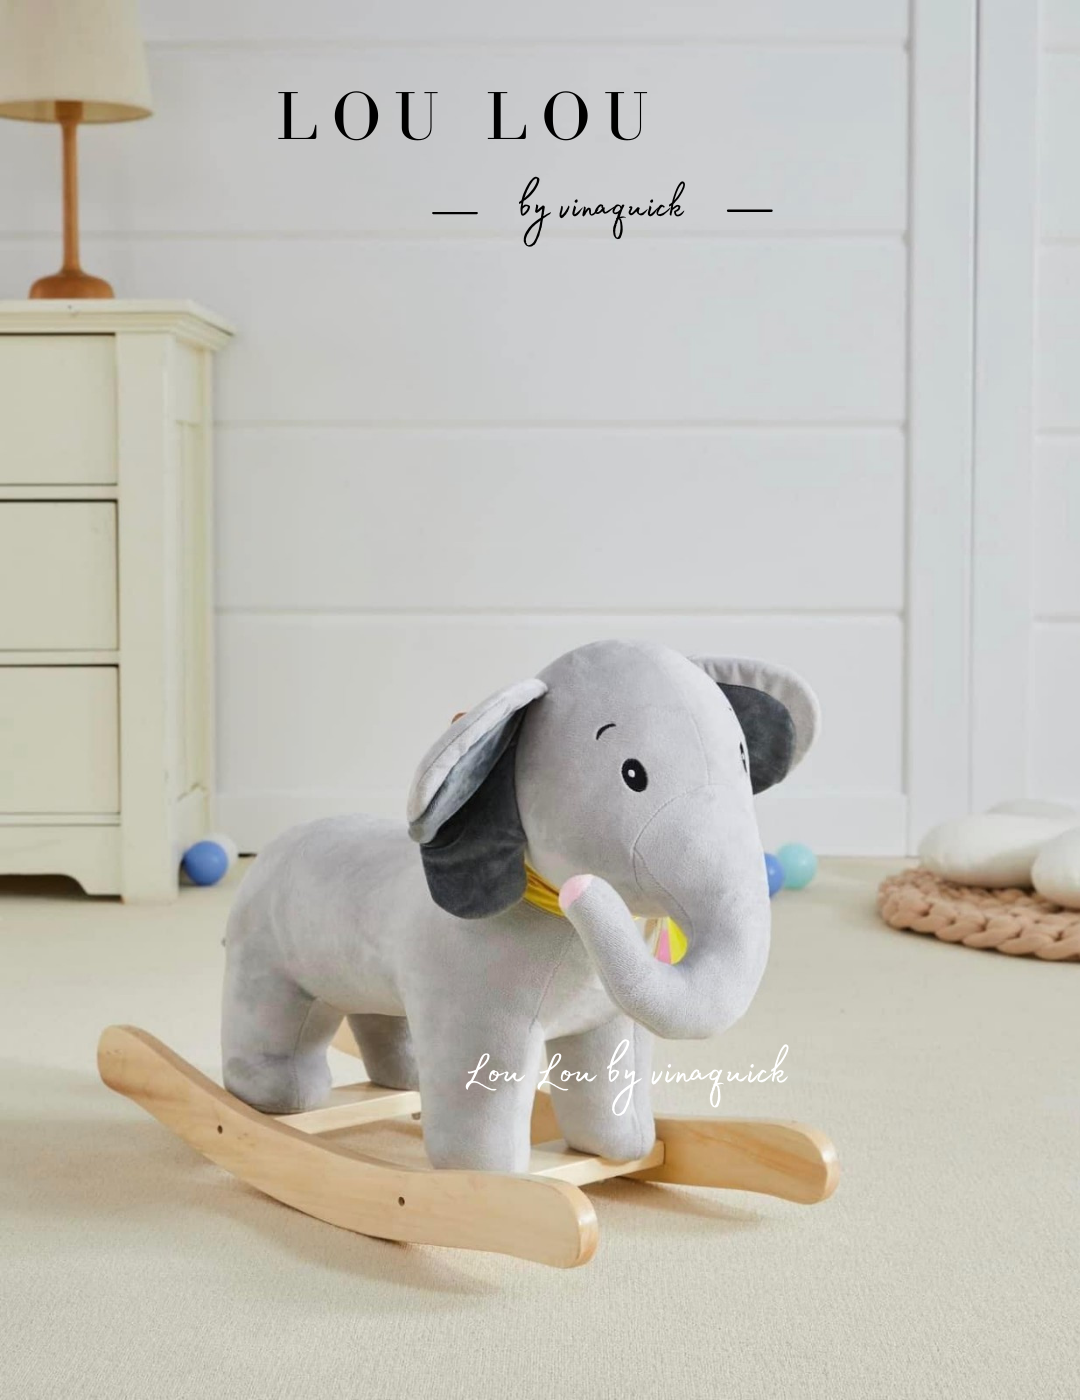  Đồ chơi bập bênh hình chú voi LouLou by Vinaquick 